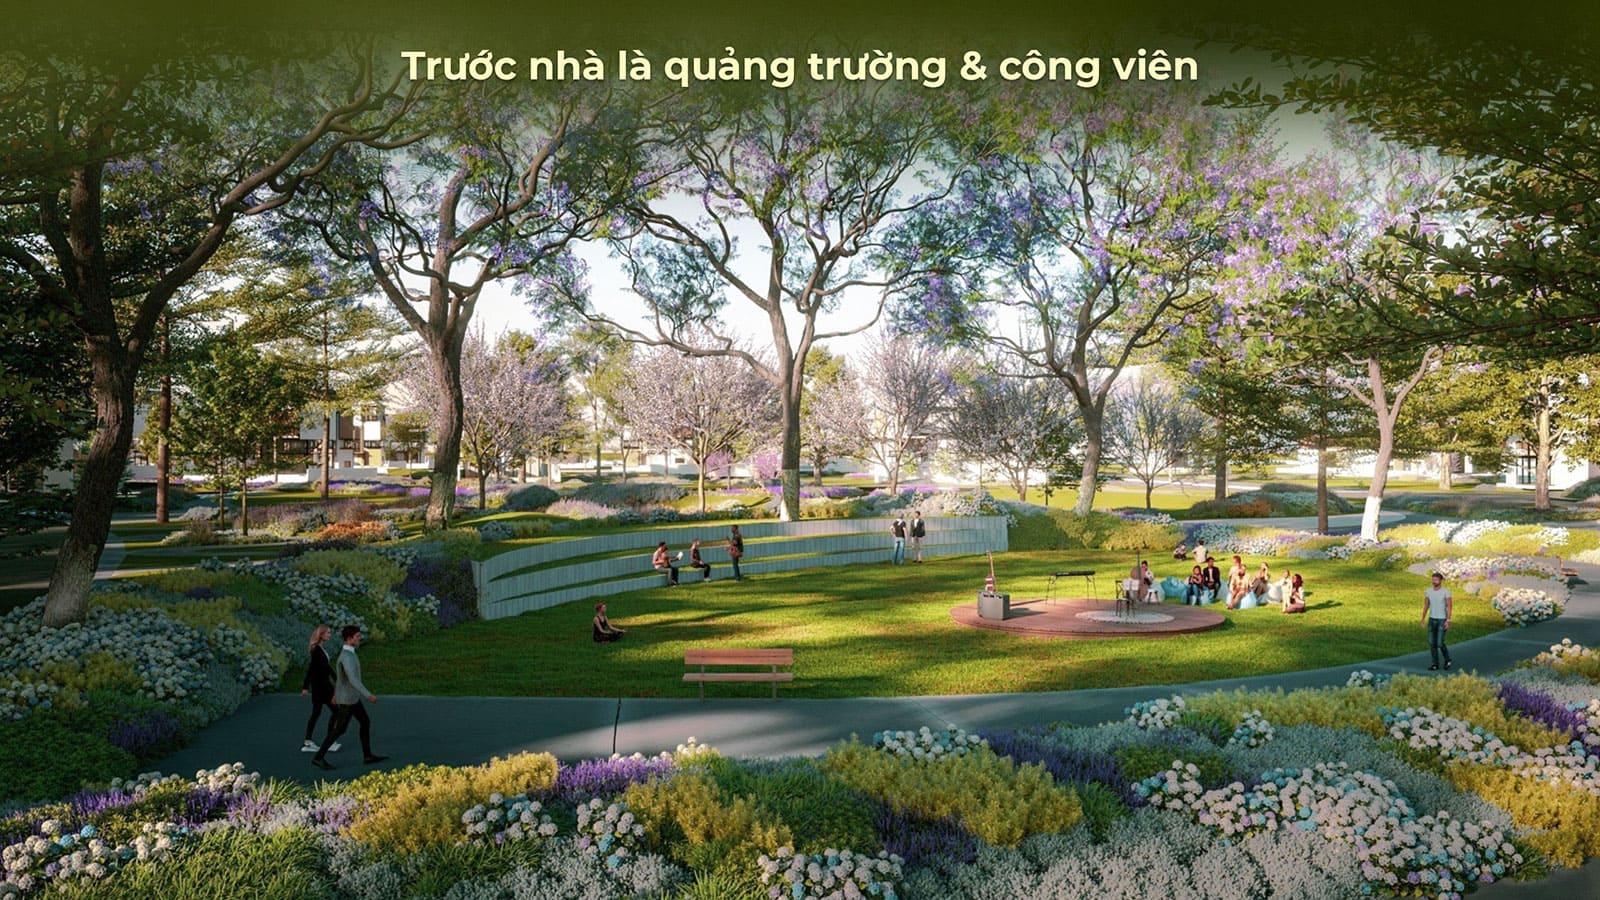 Phối cảnh tiện ích mang tiêu chuẩn Resort 6 sao tại khu đô thị Eco Village Saigon River.